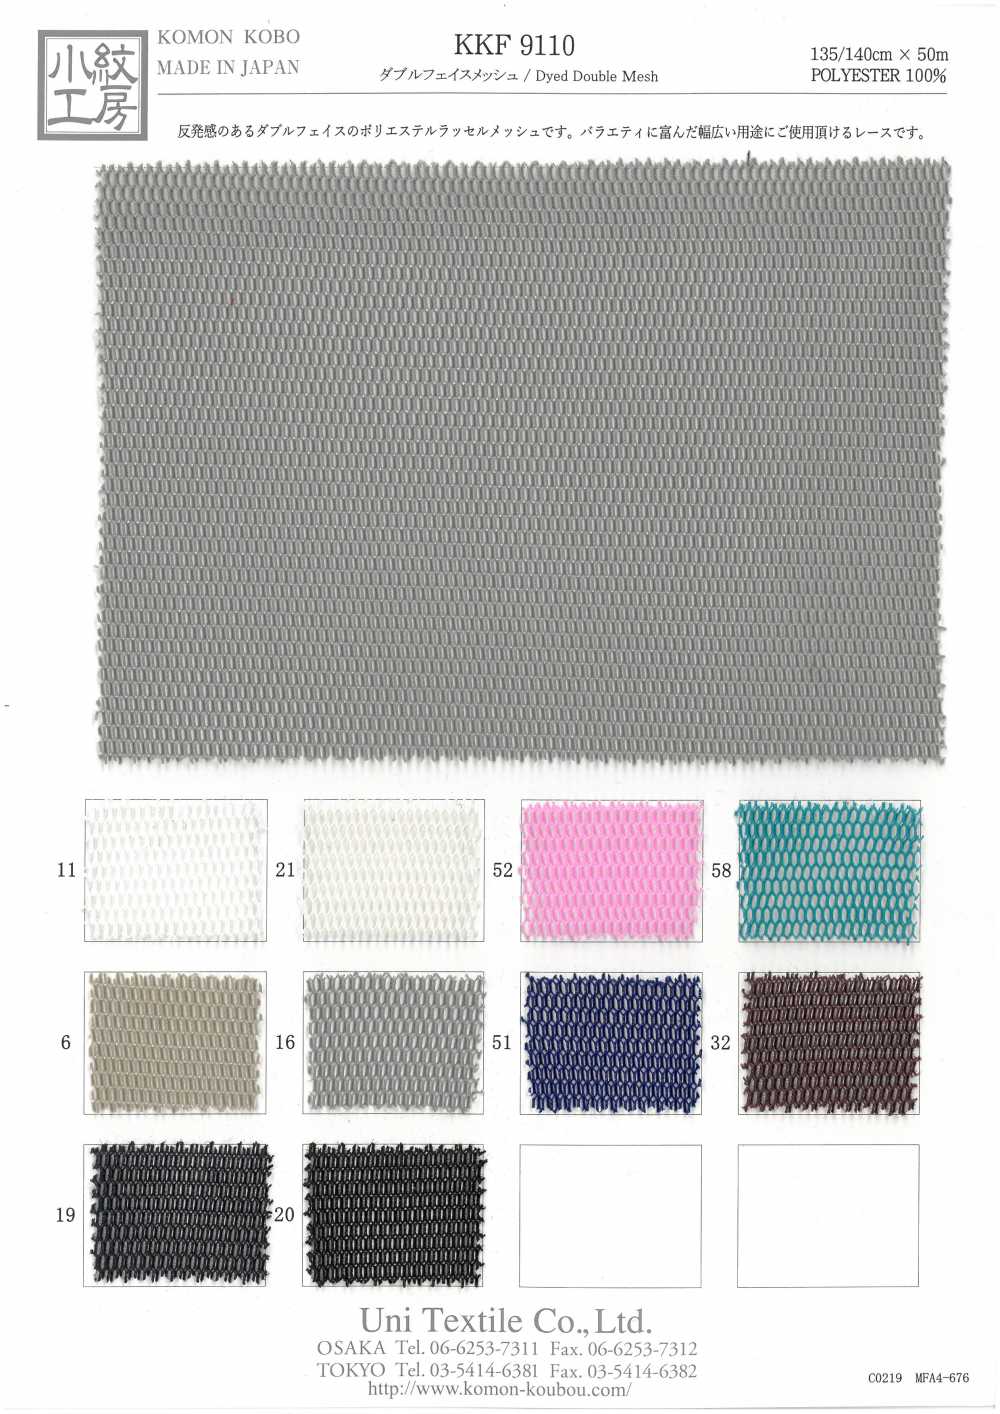 KKF9110 Maglia A Doppia Faccia[Tessile / Tessuto] Uni Textile